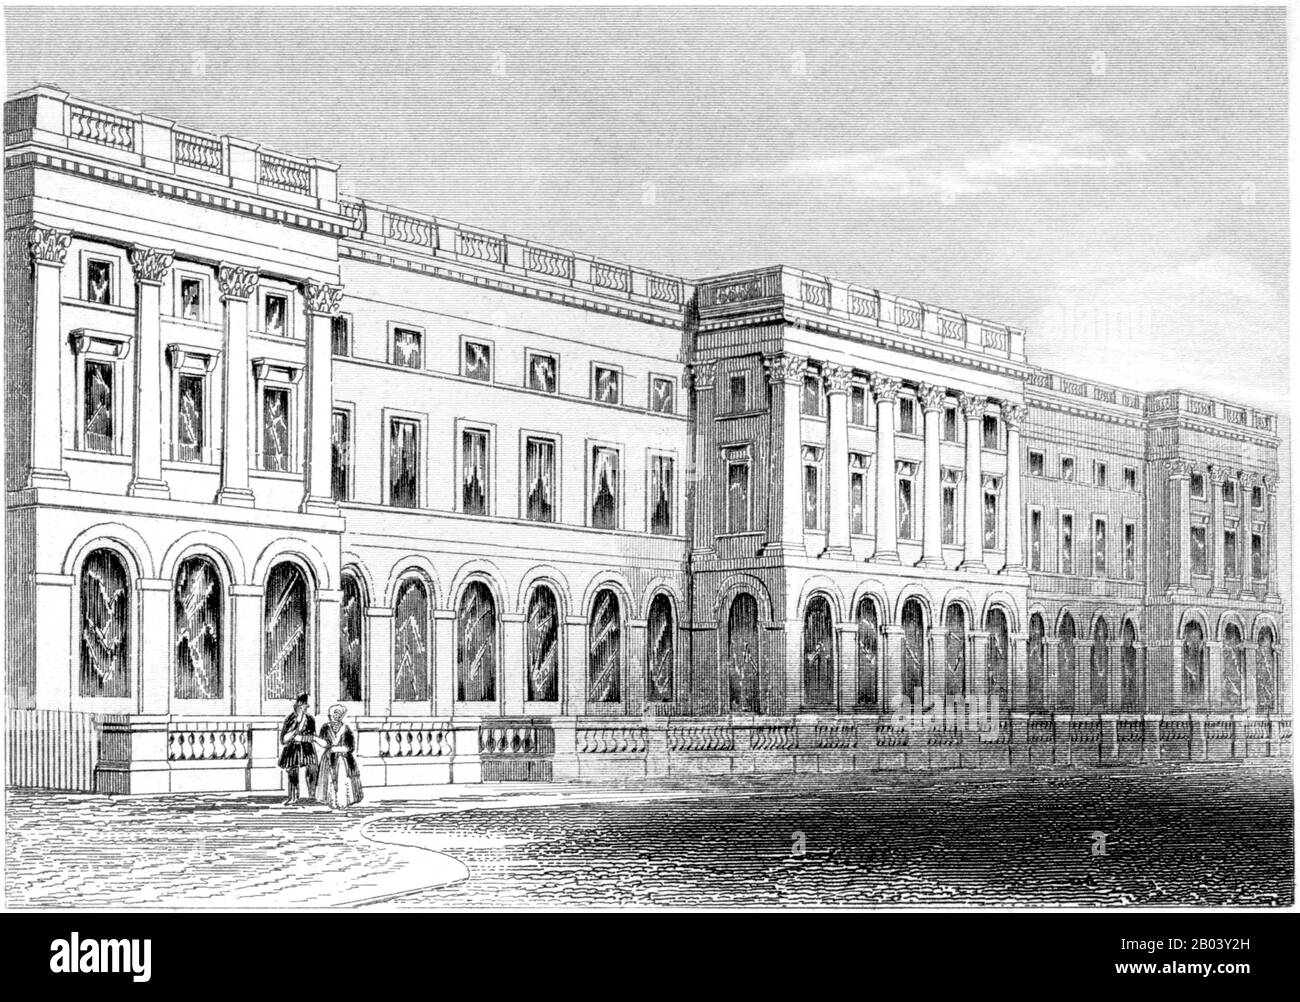 Eine Gravur des Kings College, Strand, London, gescannte in hoher Auflösung aus einem Buch, das im Jahr 1851 gedruckt wurde. Ich glaube, dass das Urheberrecht frei ist. Stockfoto